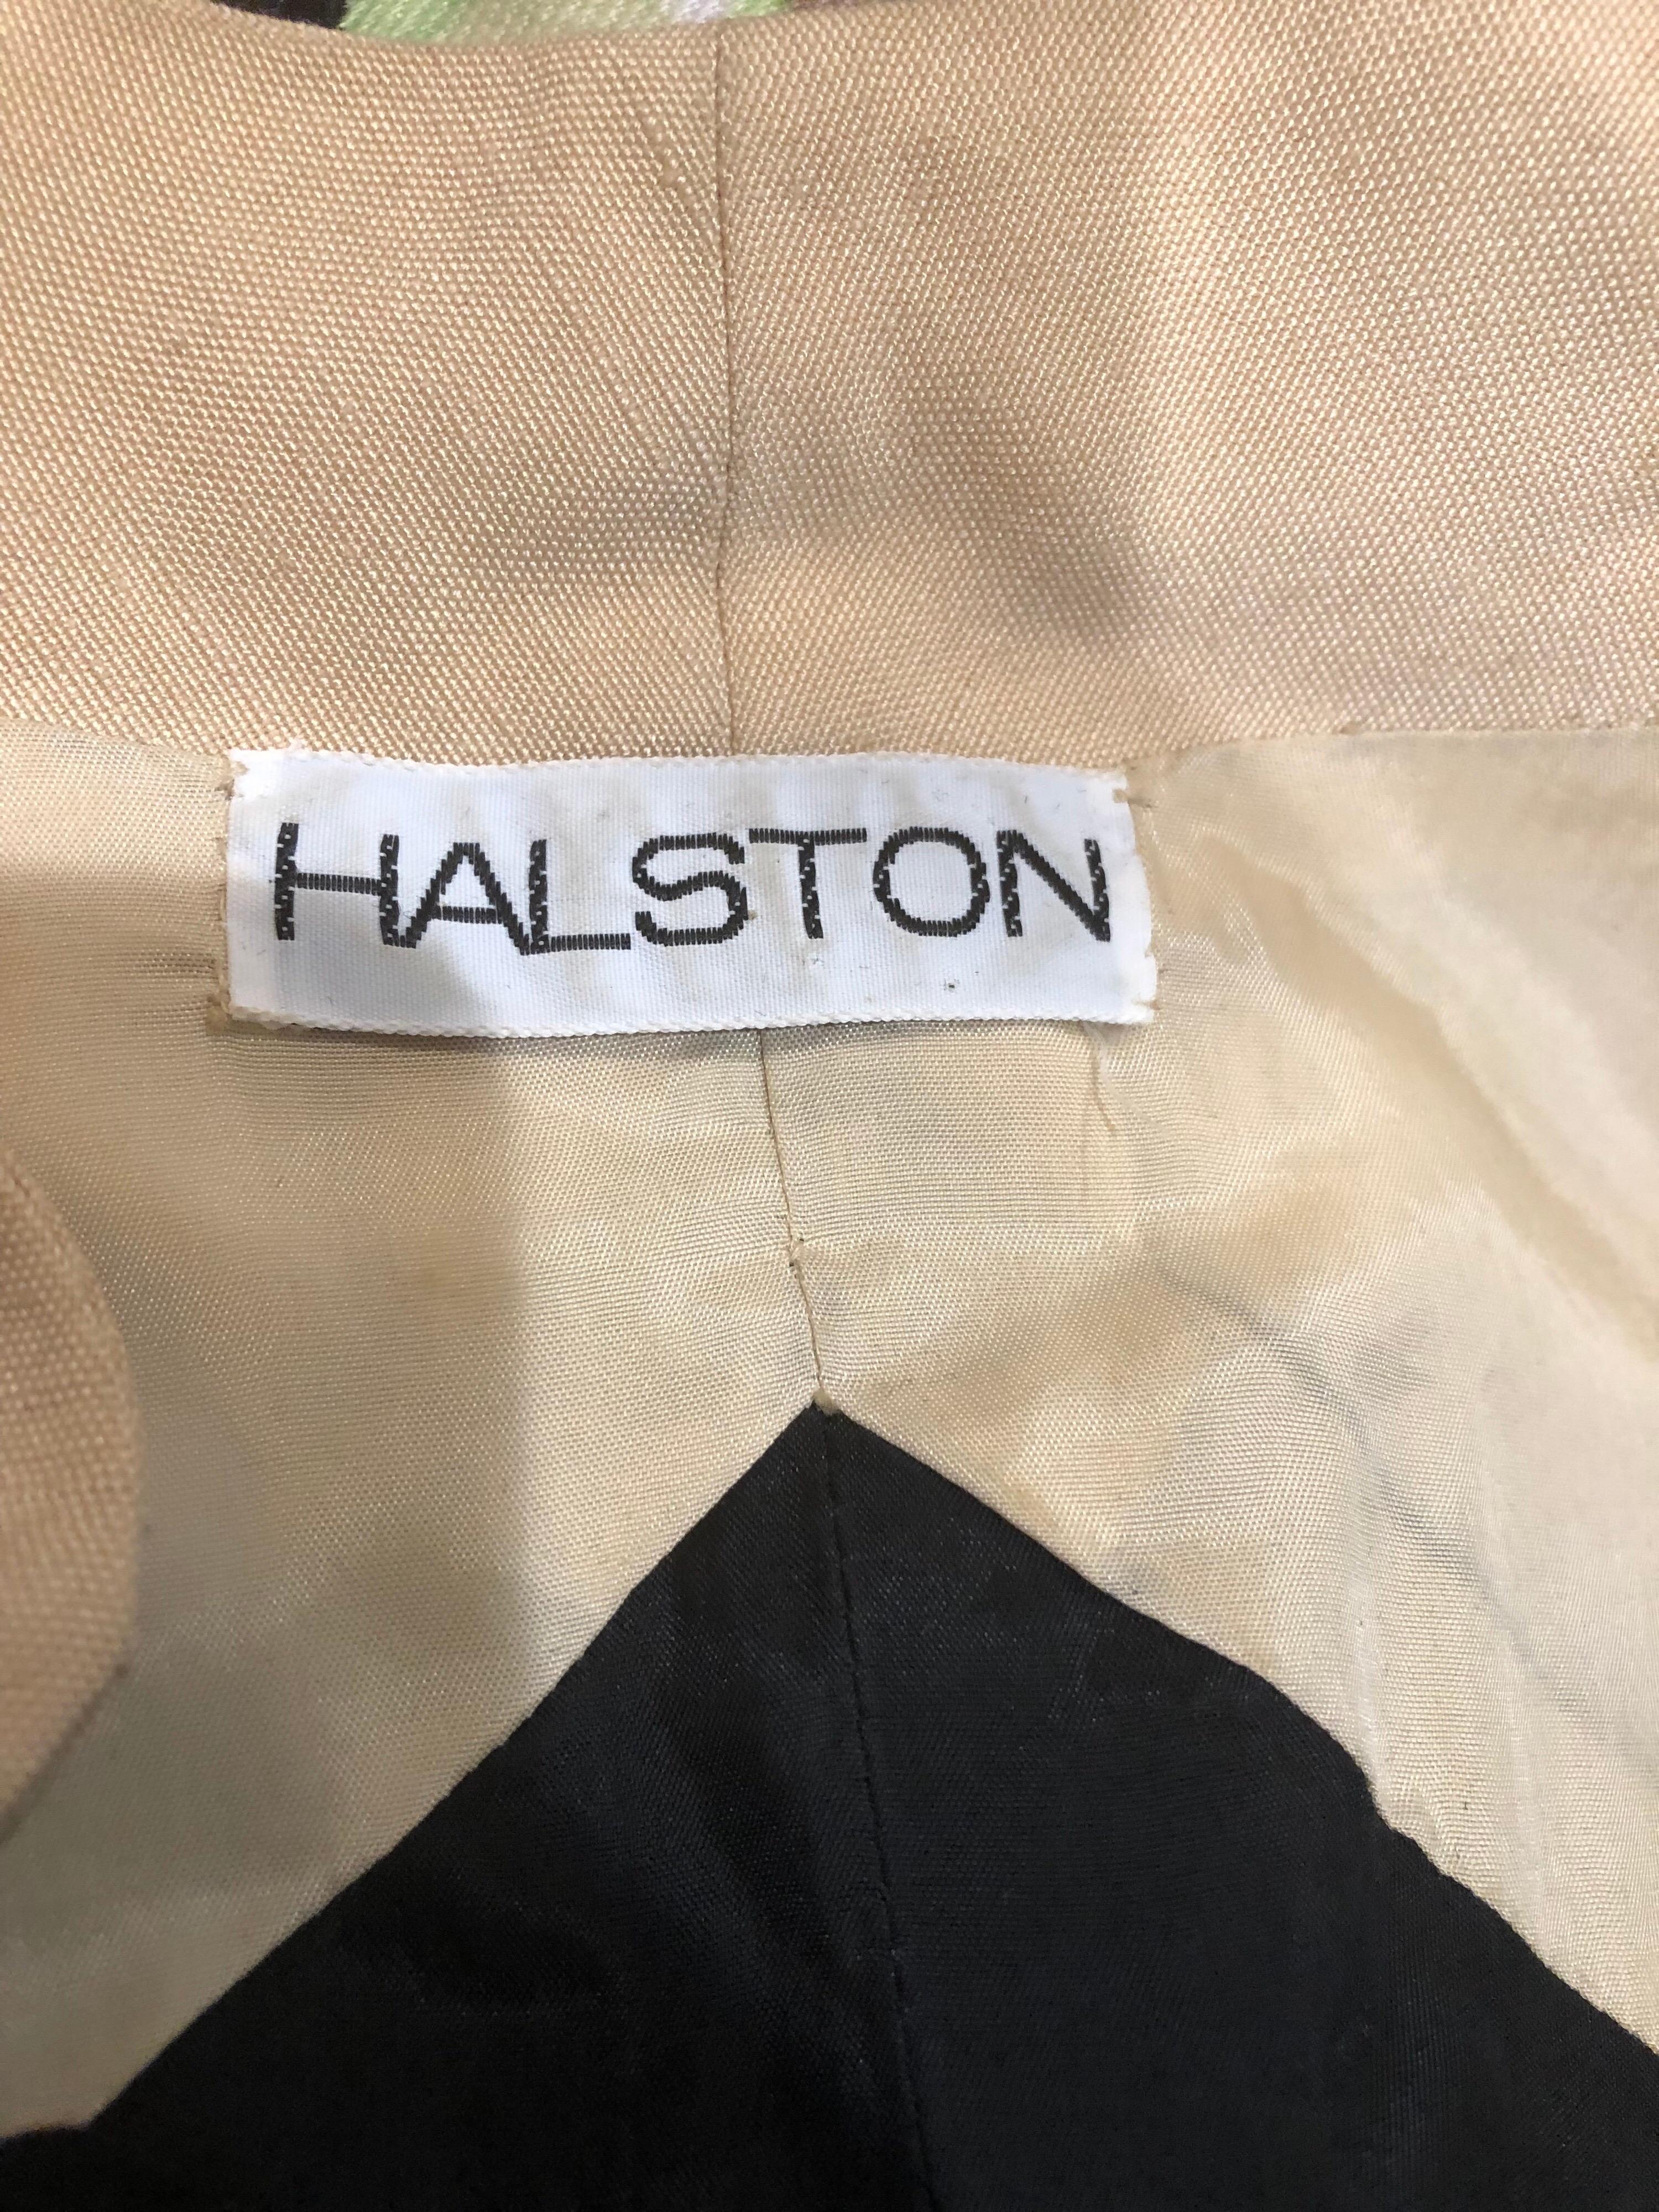 Seltene 1970er HALSTON schwarz und khaki optische Täuschung Trapez Kleid! Das khakifarbene Oberteil sieht aus, als würde man ein Bolero-Jäckchen über einem schwarzen trägerlosen Kleid tragen. Der schmeichelhafte Trapez-Stil sieht an einer Vielzahl